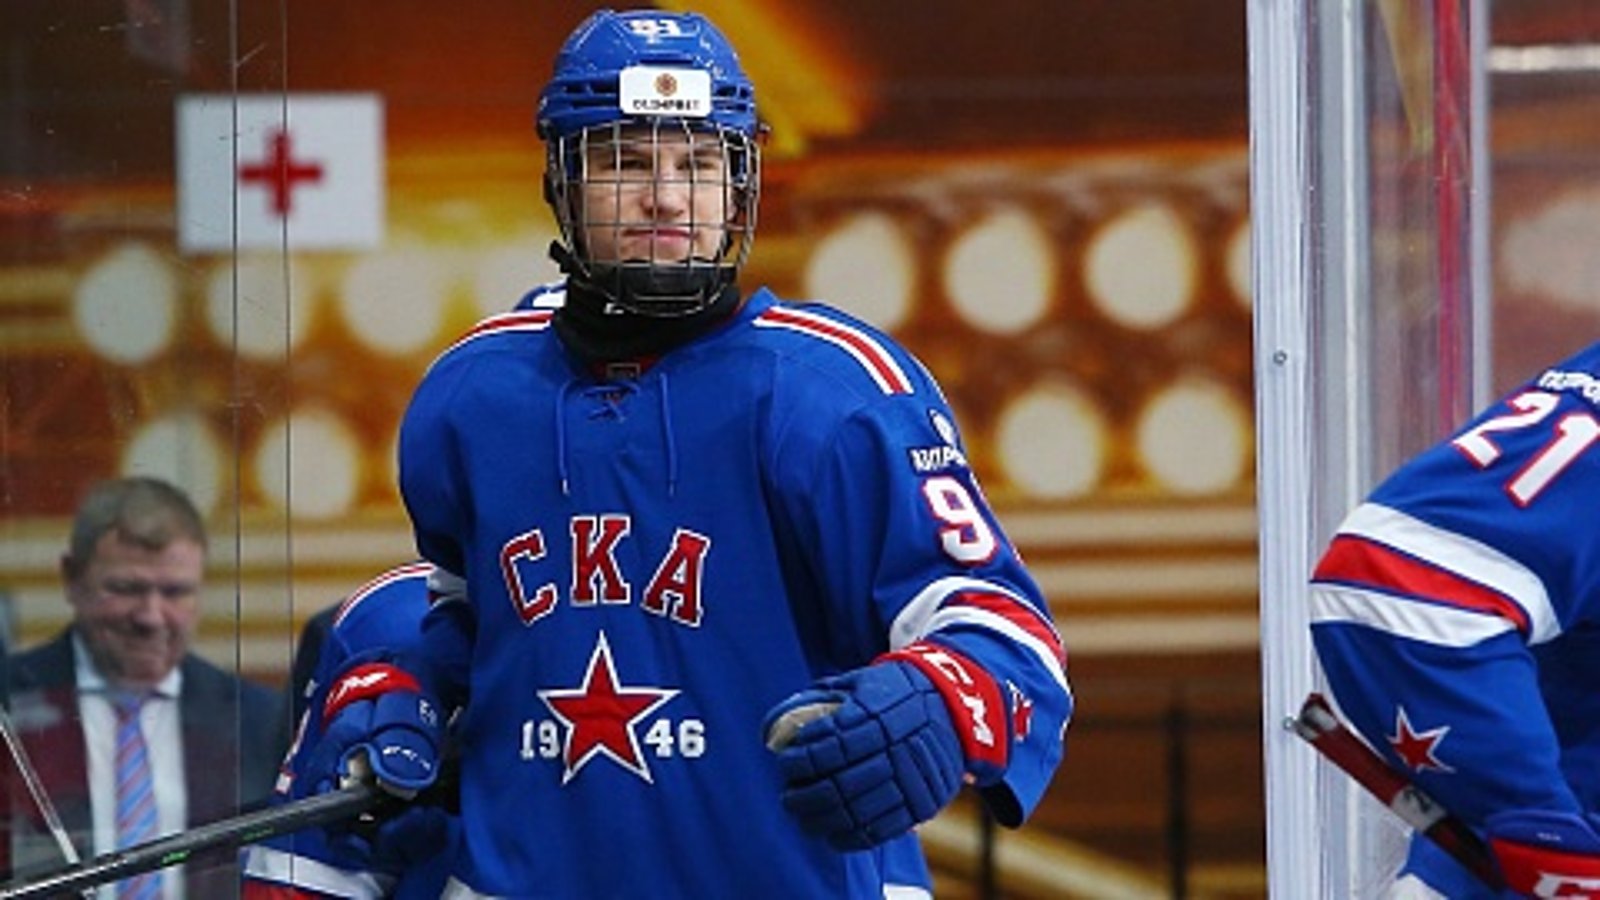 Ivan Demidov voudrait faire le saut dans la LNH plus tôt que prévu